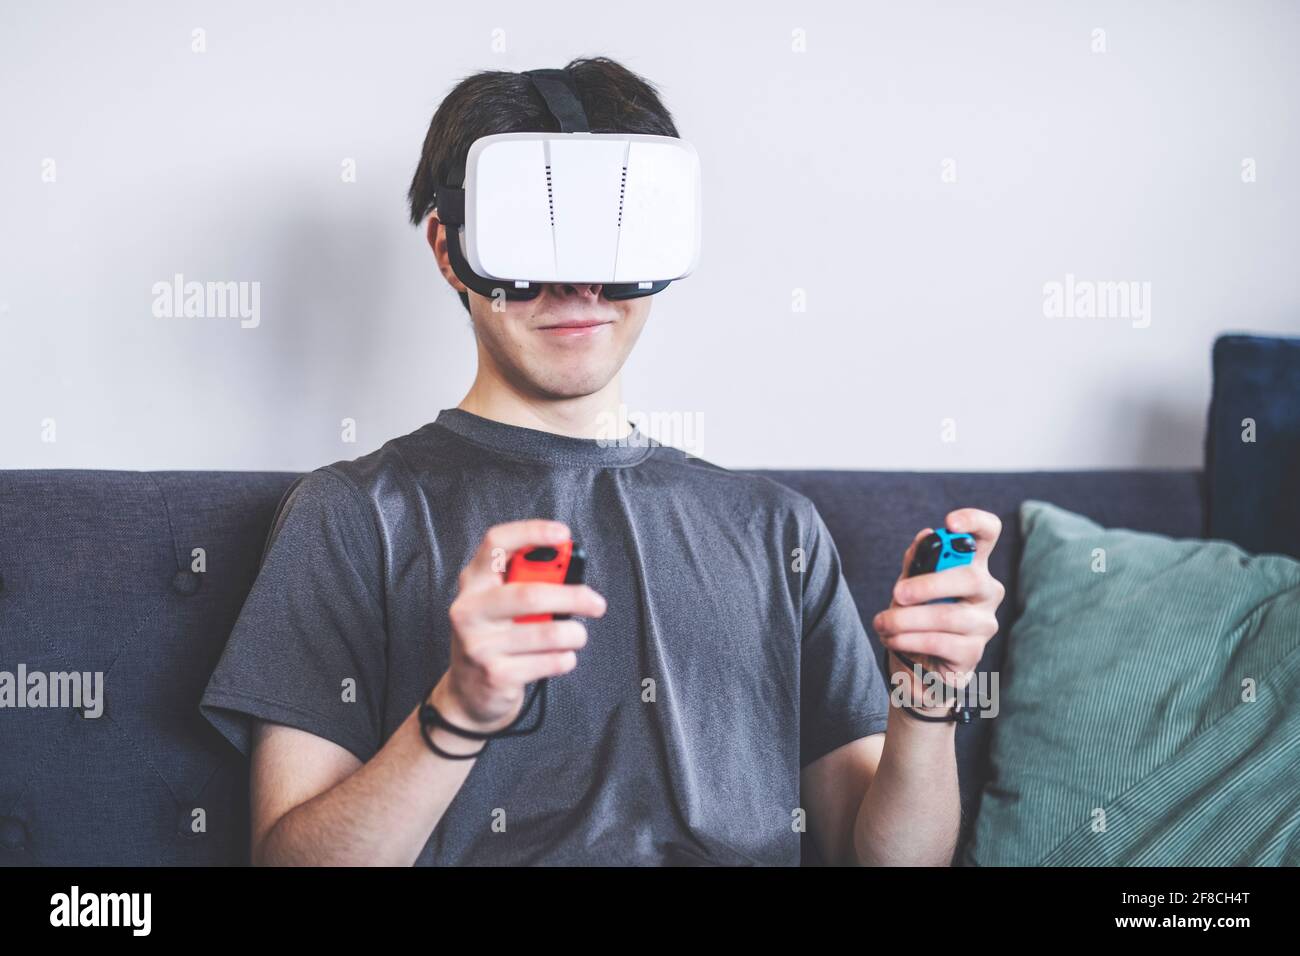 Jeux à la maison avec un casque VR, réalité virtuelle, adolescent / jeune homme dans ses années vingt, décor de salon, assis sur un canapé Banque D'Images